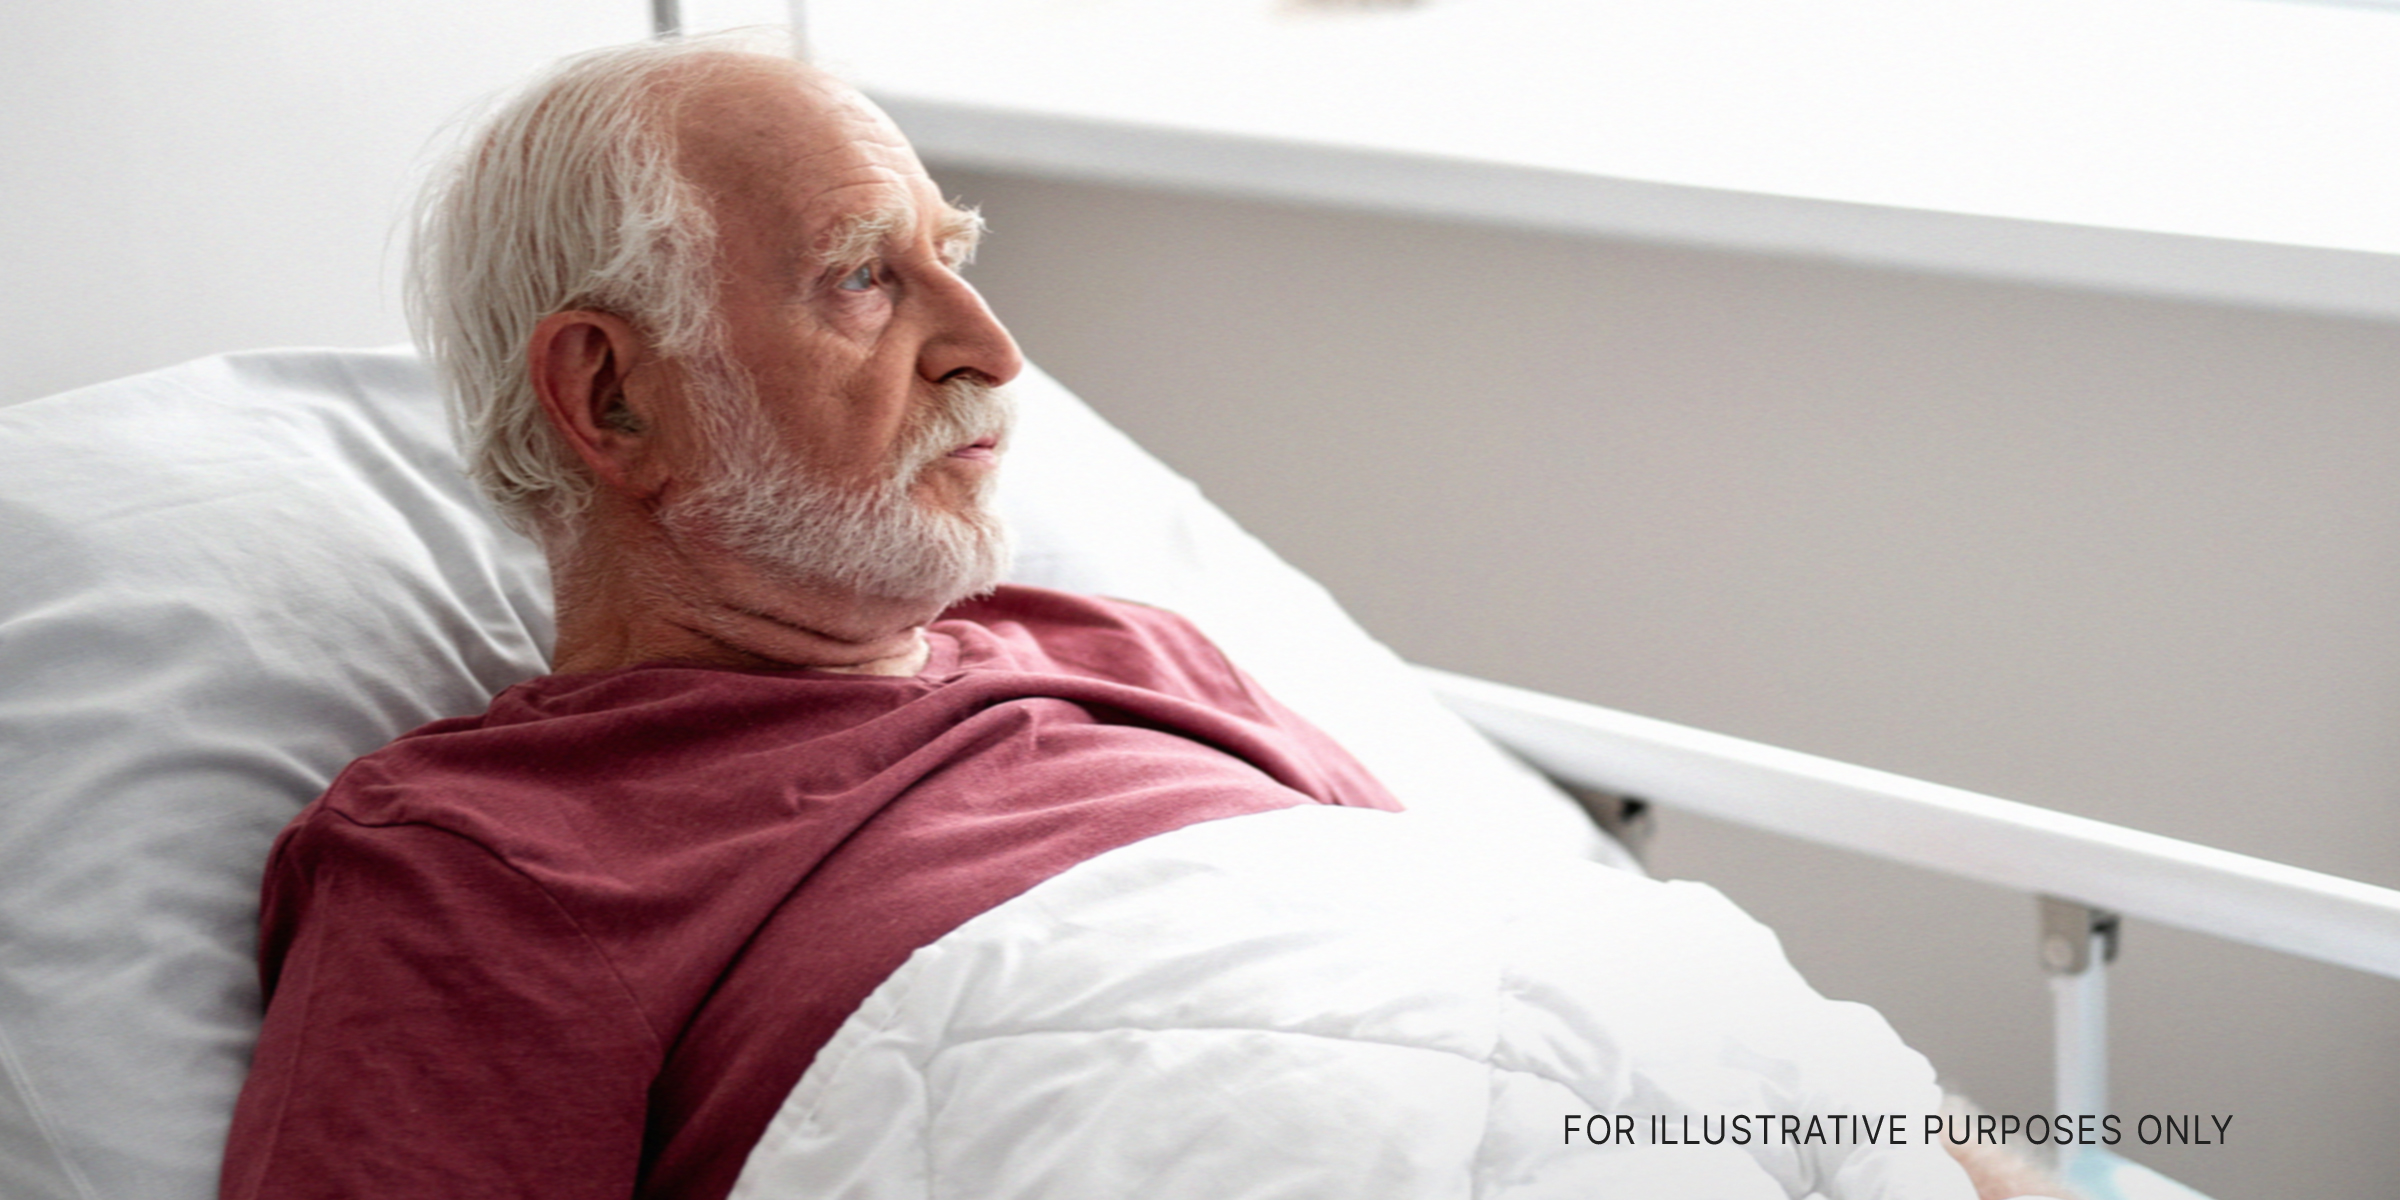 Mann liegt in einem Krankenhausbett | Quelle: Shutterstock